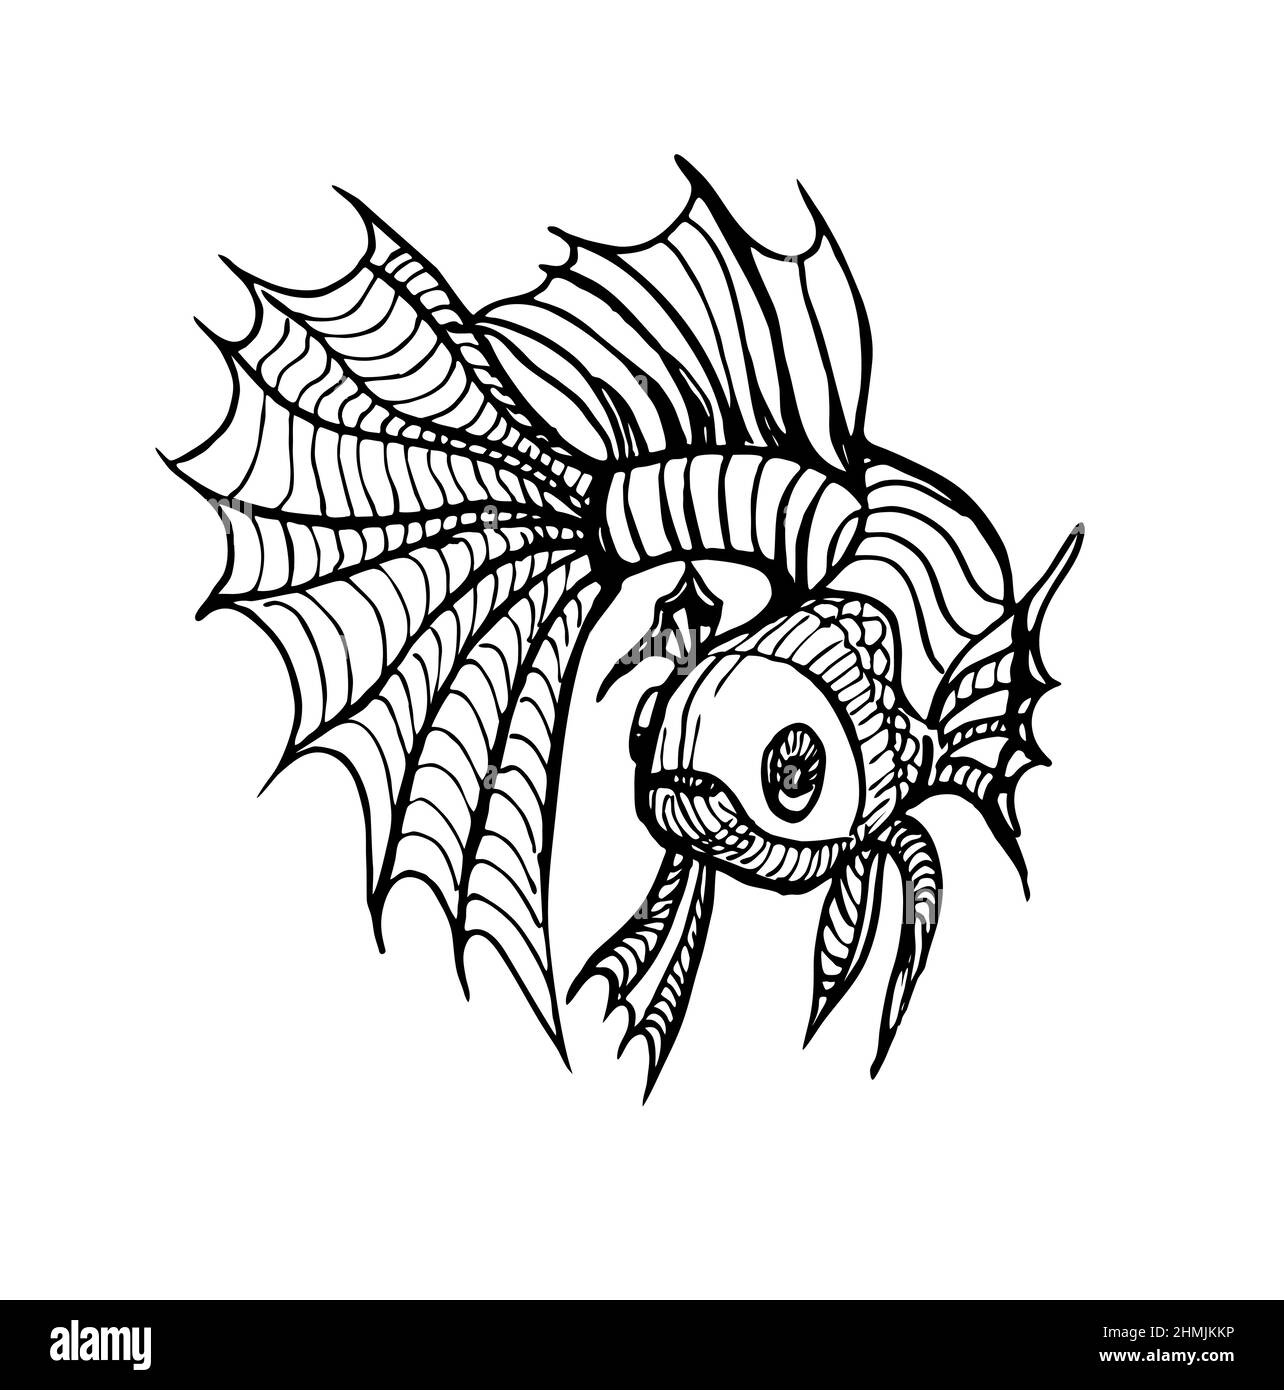 Dessin vectoriel noir et blanc d'un poisson. Tatouage sur un thème marin. Illustration de Vecteur